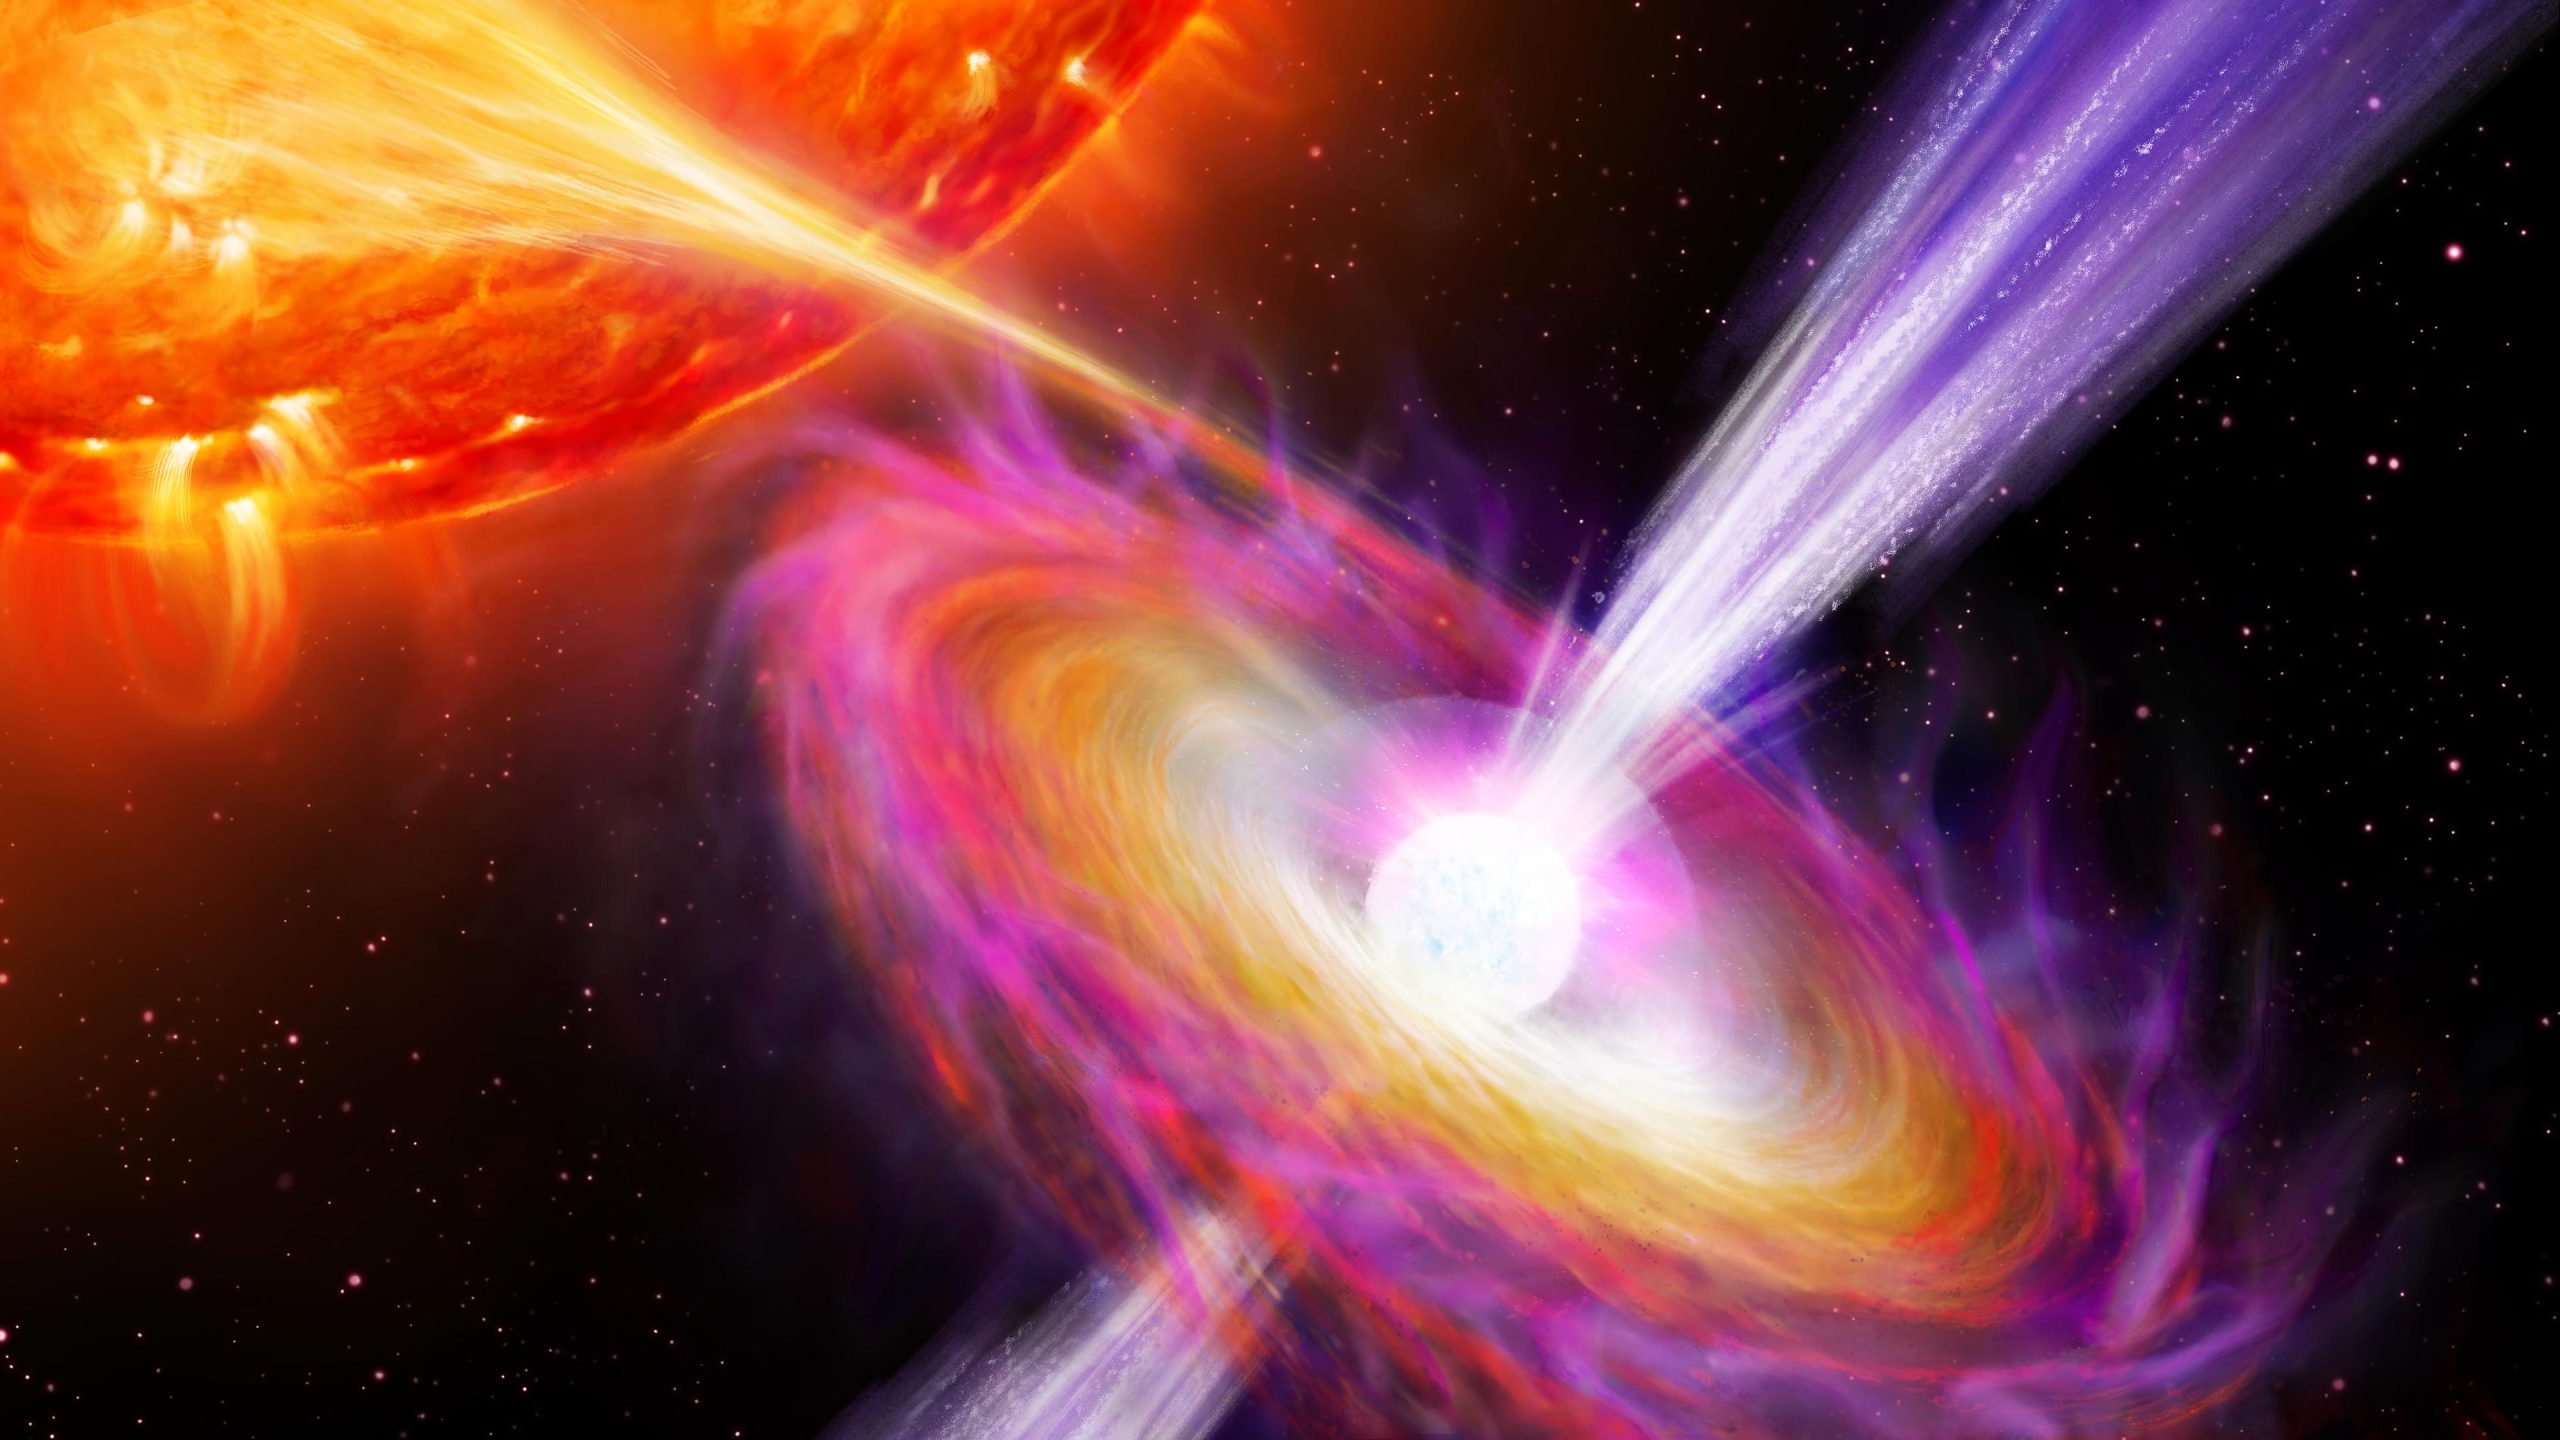 تلسکوپ فضایی انتگرال، انفجارهای هسته ای عظیمی را مشاهده می کند که جت های ستاره های نوترونی را نیرو می دهد